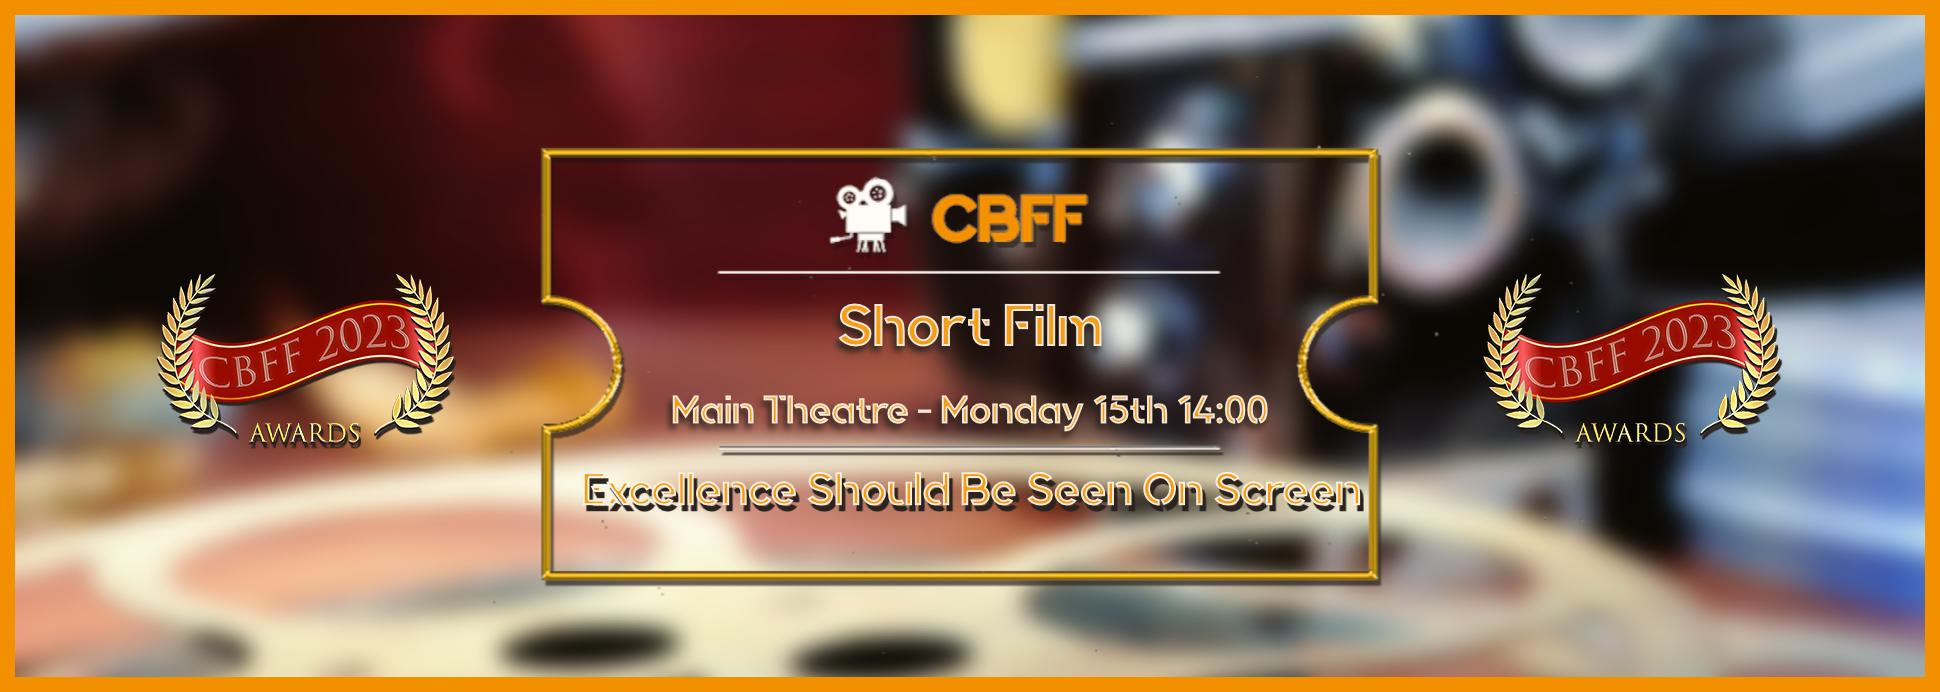 Main Theatre Short Film 15th 14:00